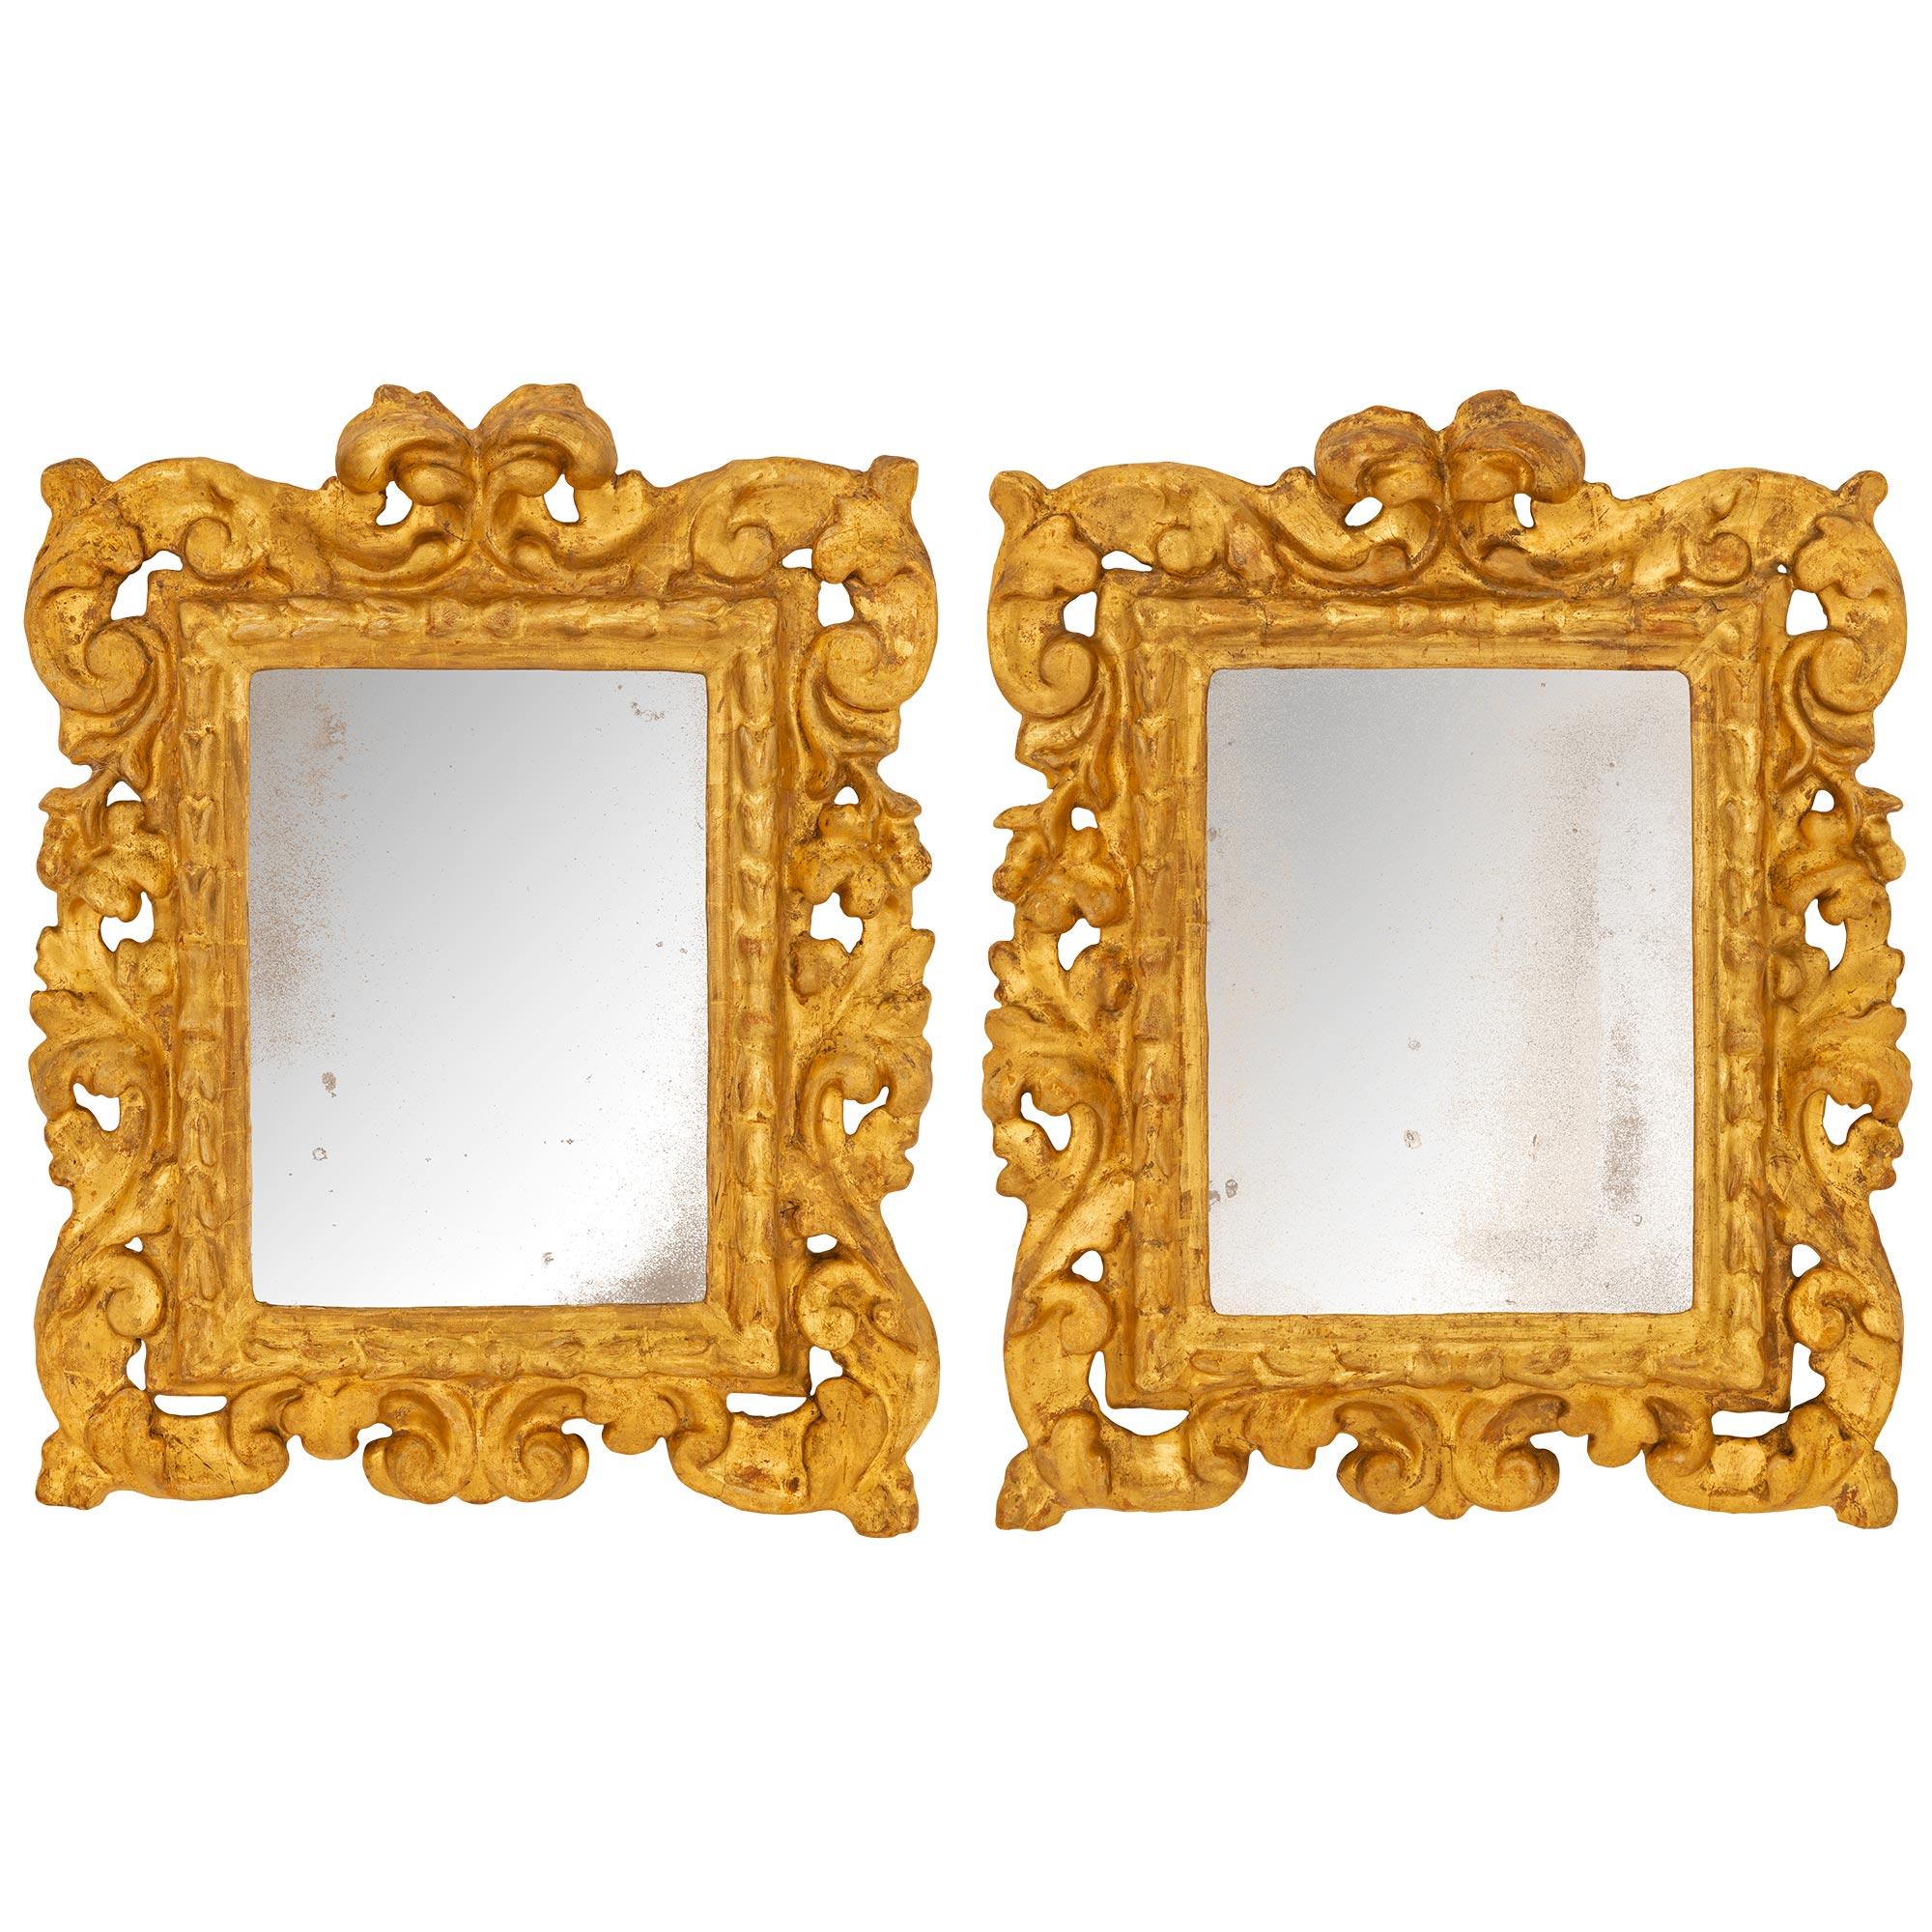 Ein charmantes und äußerst dekoratives Paar italienischer vergoldeter italienischer Spiegel aus dem frühen 18. Jahrhundert aus der Barockzeit. Der Spiegel hat seine ursprünglichen Spiegelplatten in einer eleganten, geraden, gesprenkelten Bordüre